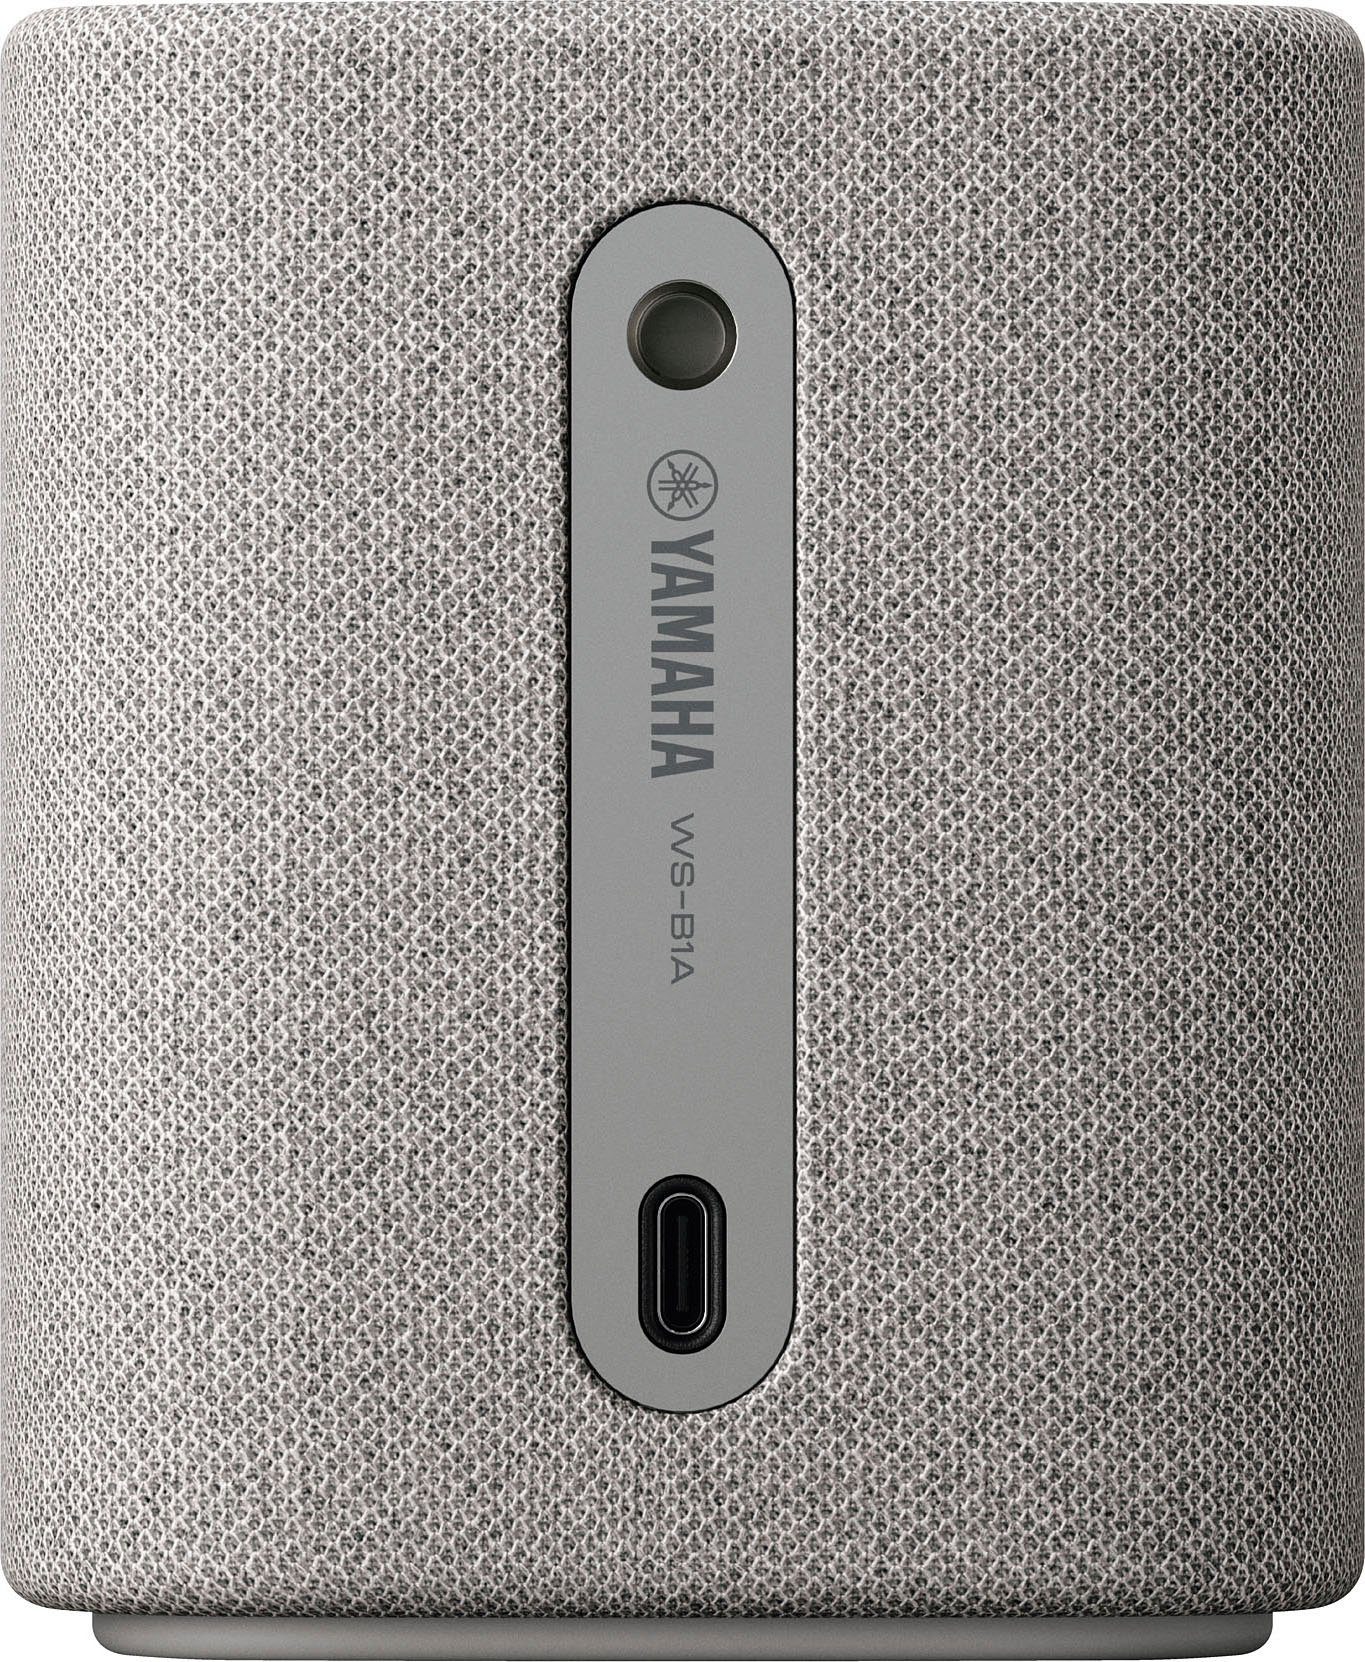 Yamaha WS-B1A Portable-Lautsprecher 10 W) AVRCP Bluetooth, Bluetooth, (A2DP